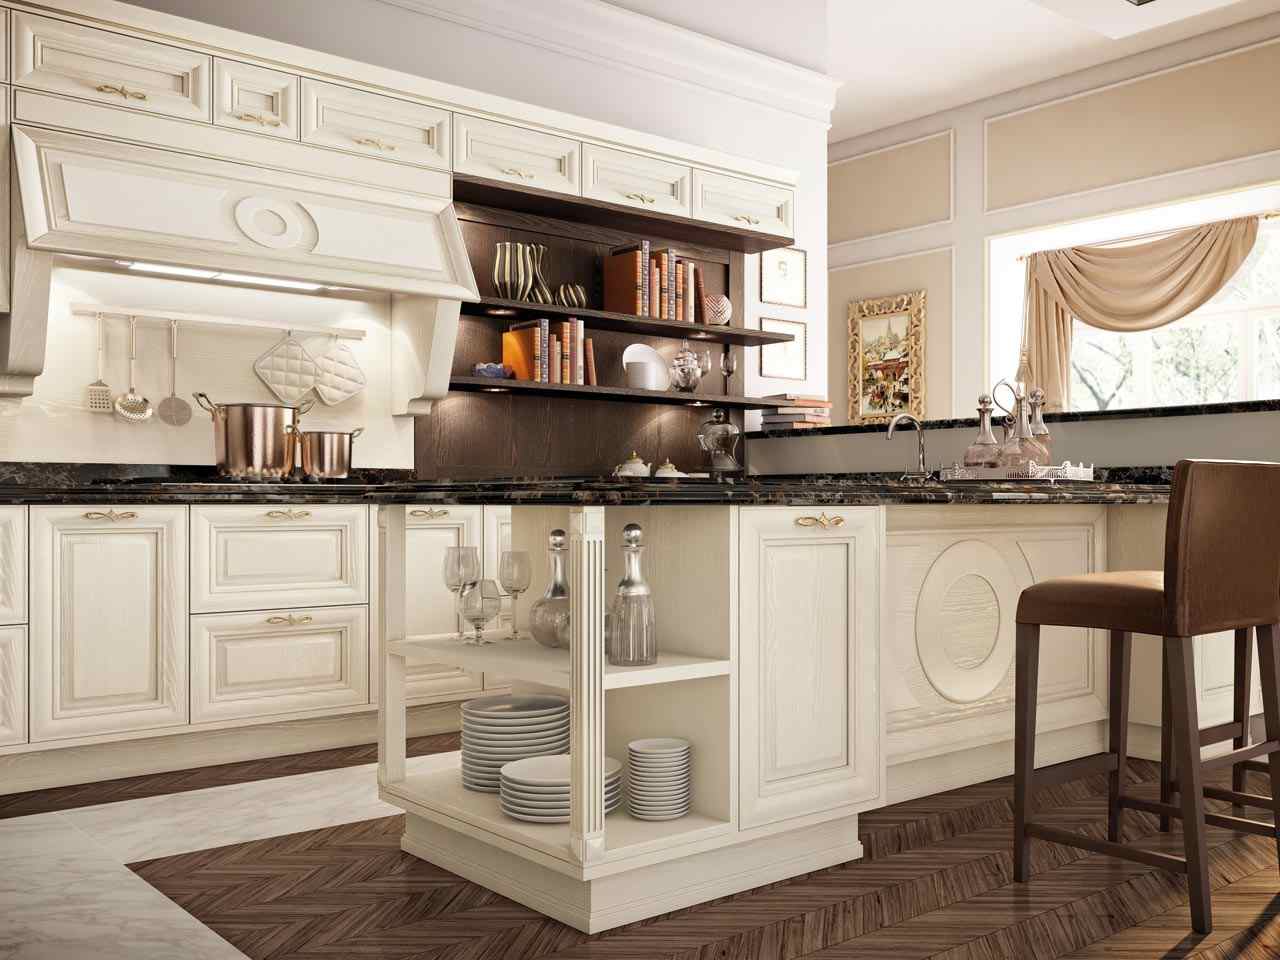 luxus küche-mit kochinsel-Wand regalsystem hochwertig massiv-holz parkett-marmor